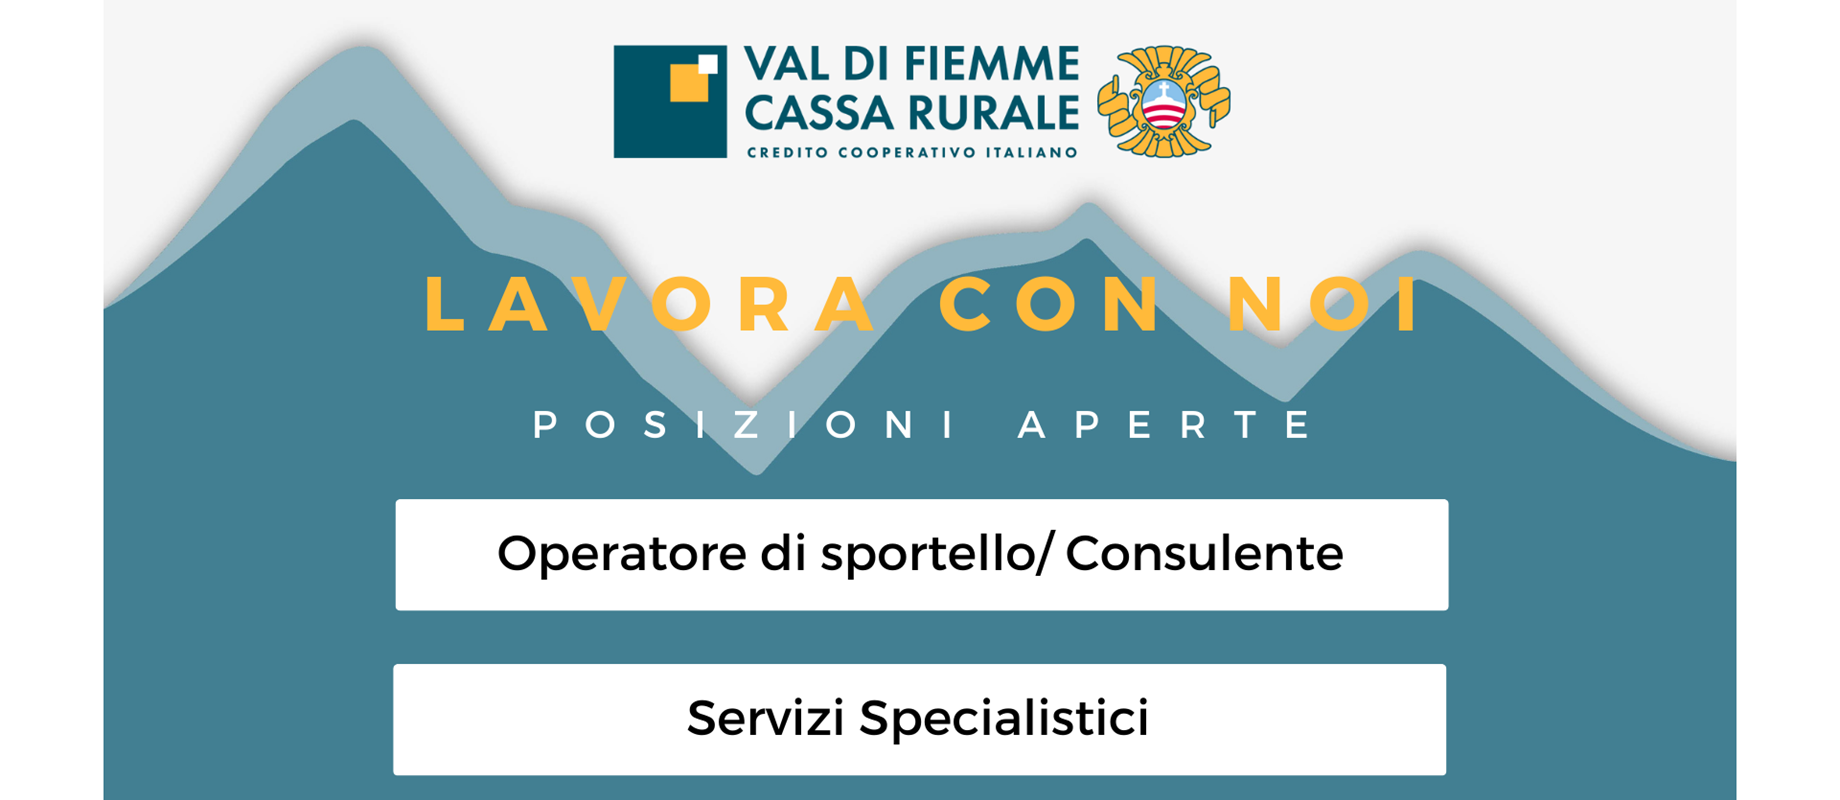 Val di Fiemme Cassa Rurale cerca candidati per future assunzioni. 